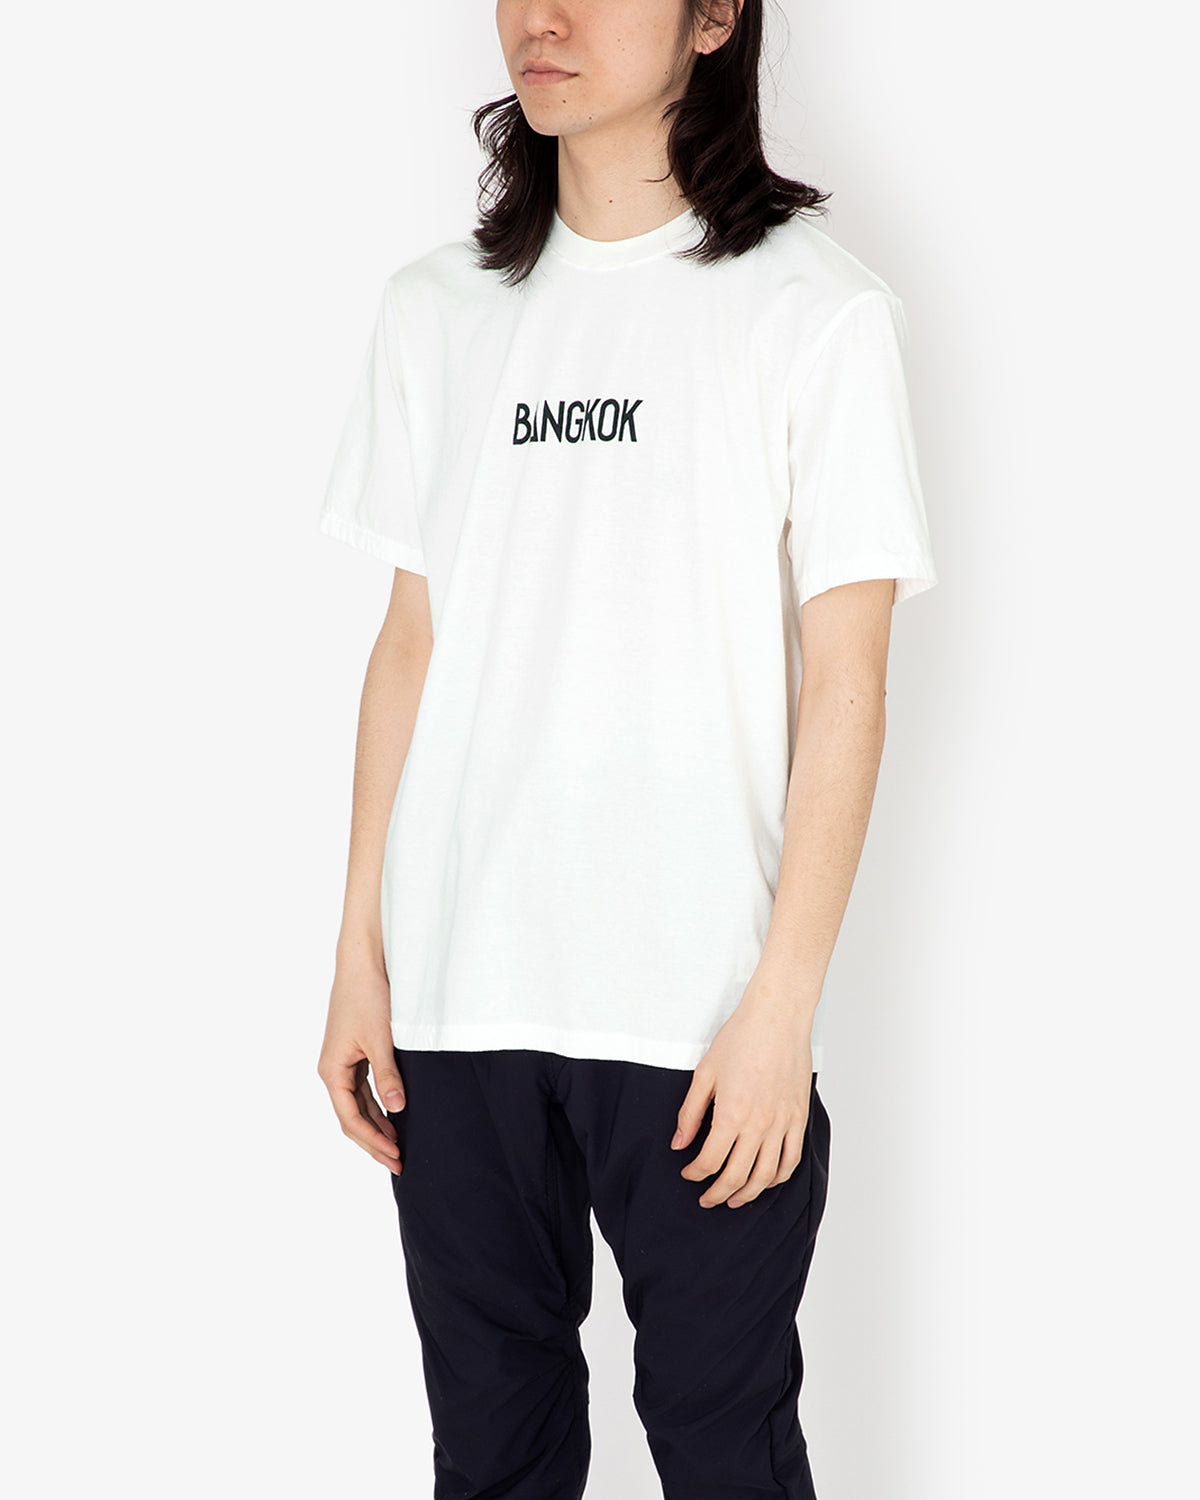 FONT T-shirts（BANGKOK）